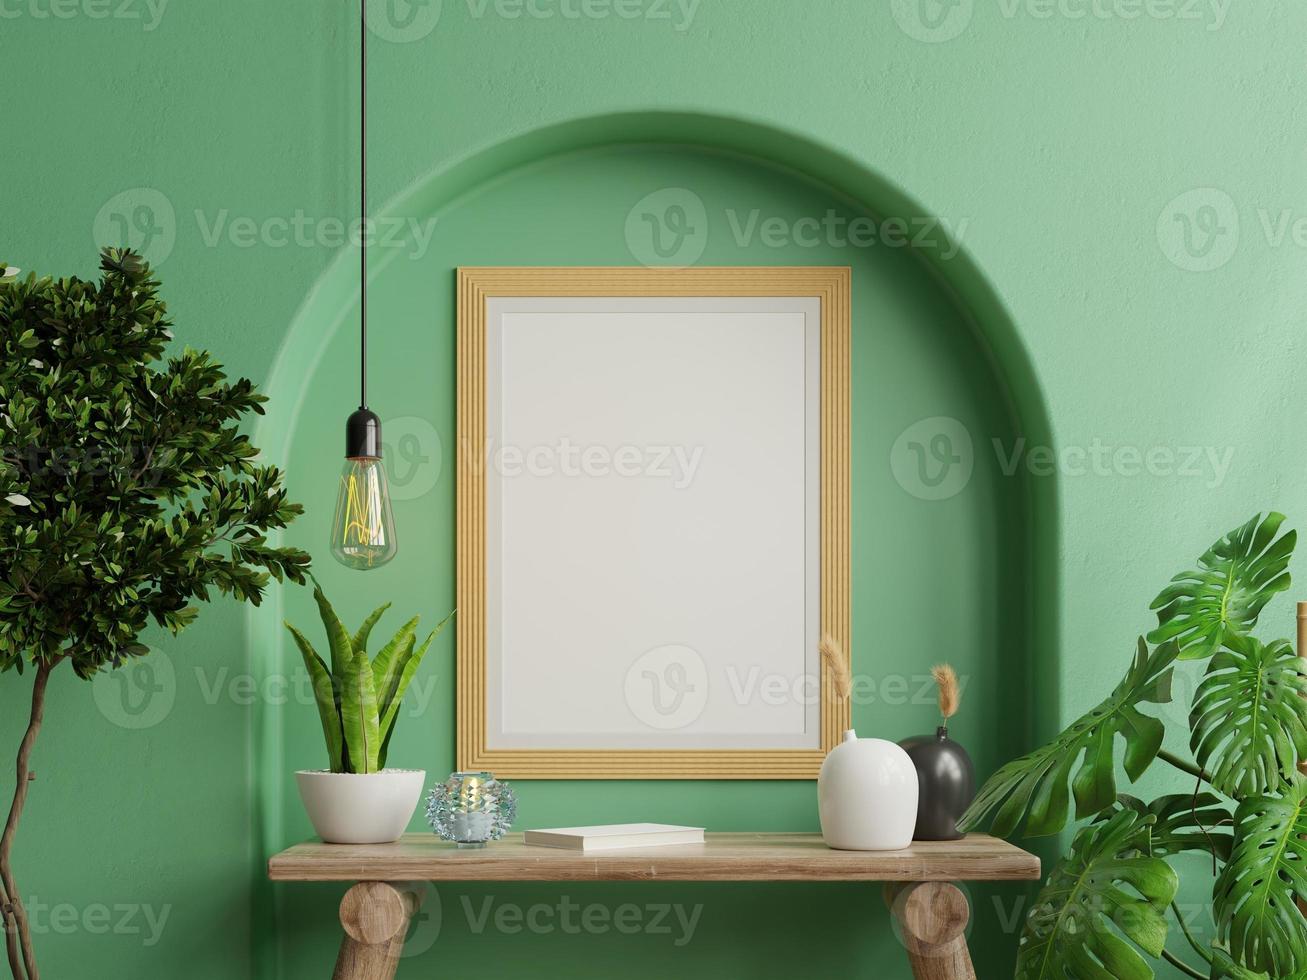 kosten Editor steno mock up fotolijst groen muur gemonteerd op de houten plank met prachtige  planten. 9207495 stockfoto bij Vecteezy